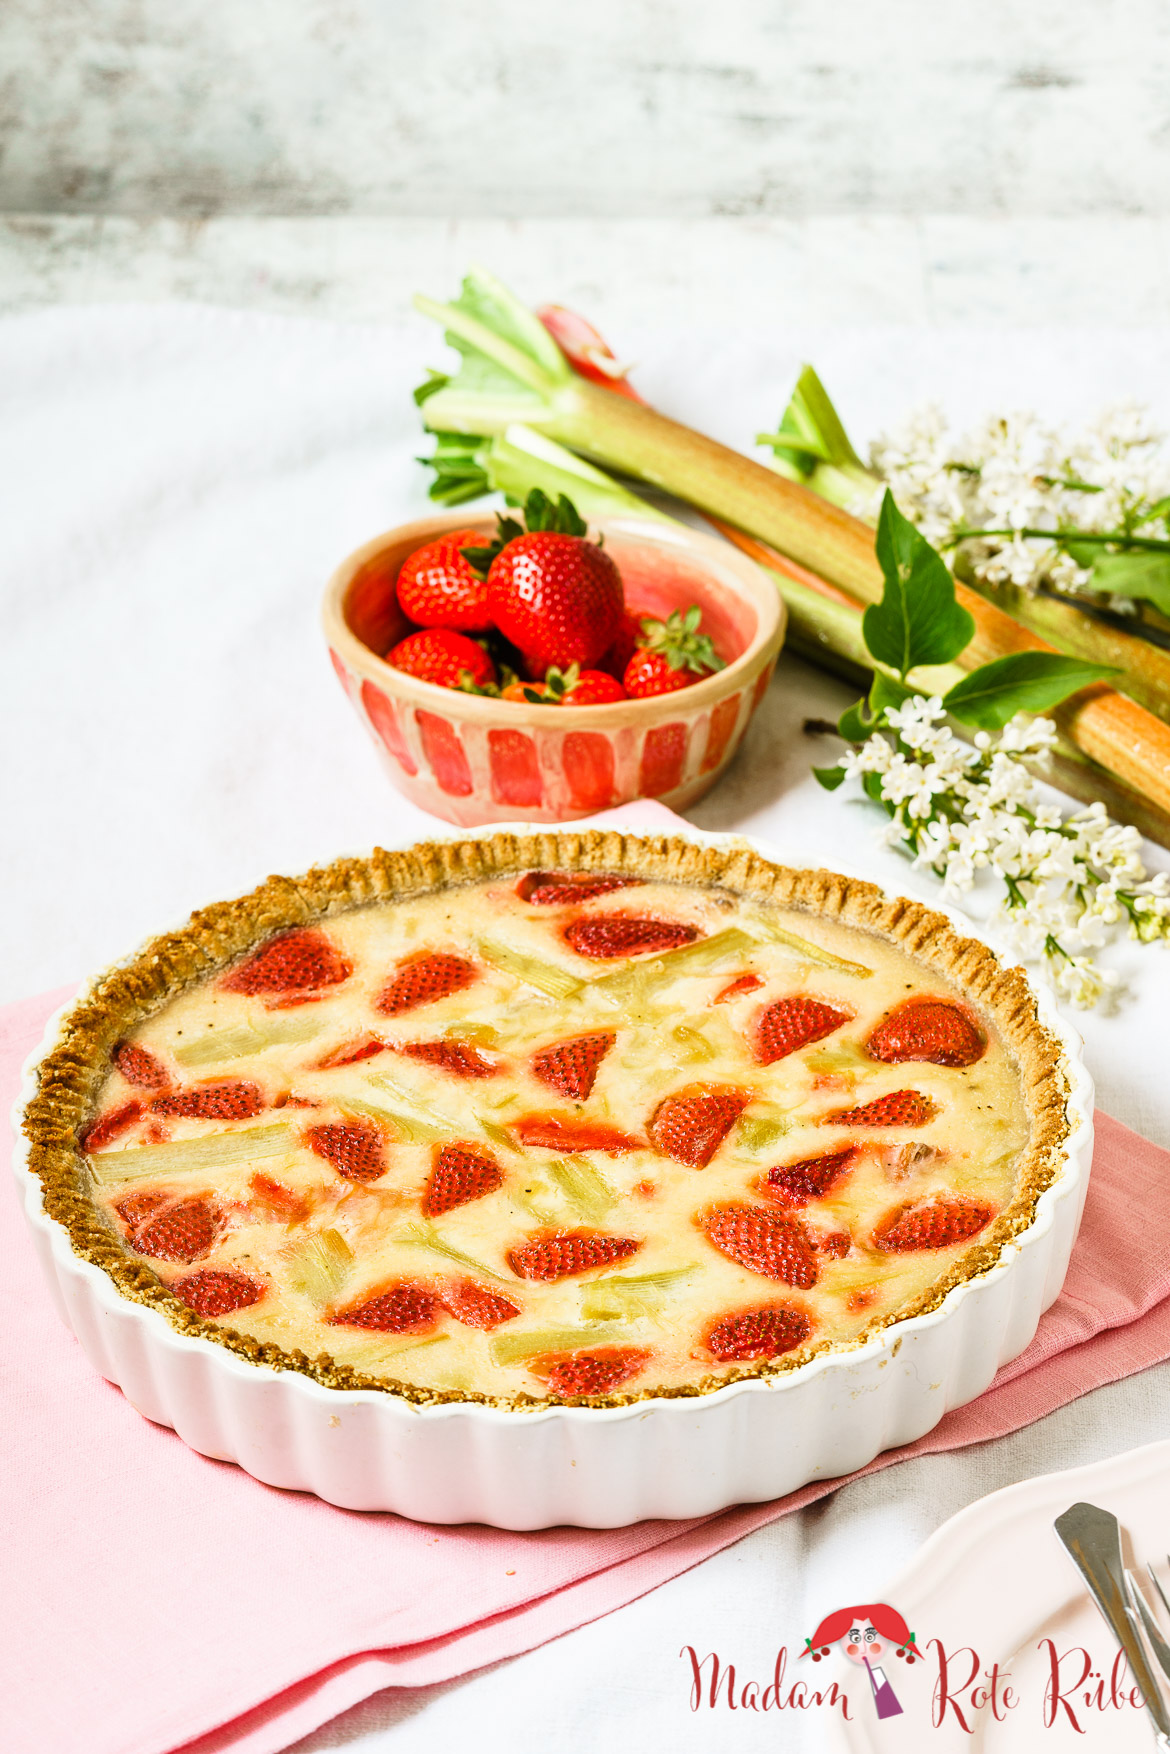 Madam Rote Rübe und ihre Rhabarber-Rezepte - Dinkelvollkorn-Tarte mit Rhabarberpudding, Crème fraîche und Erdbeeren